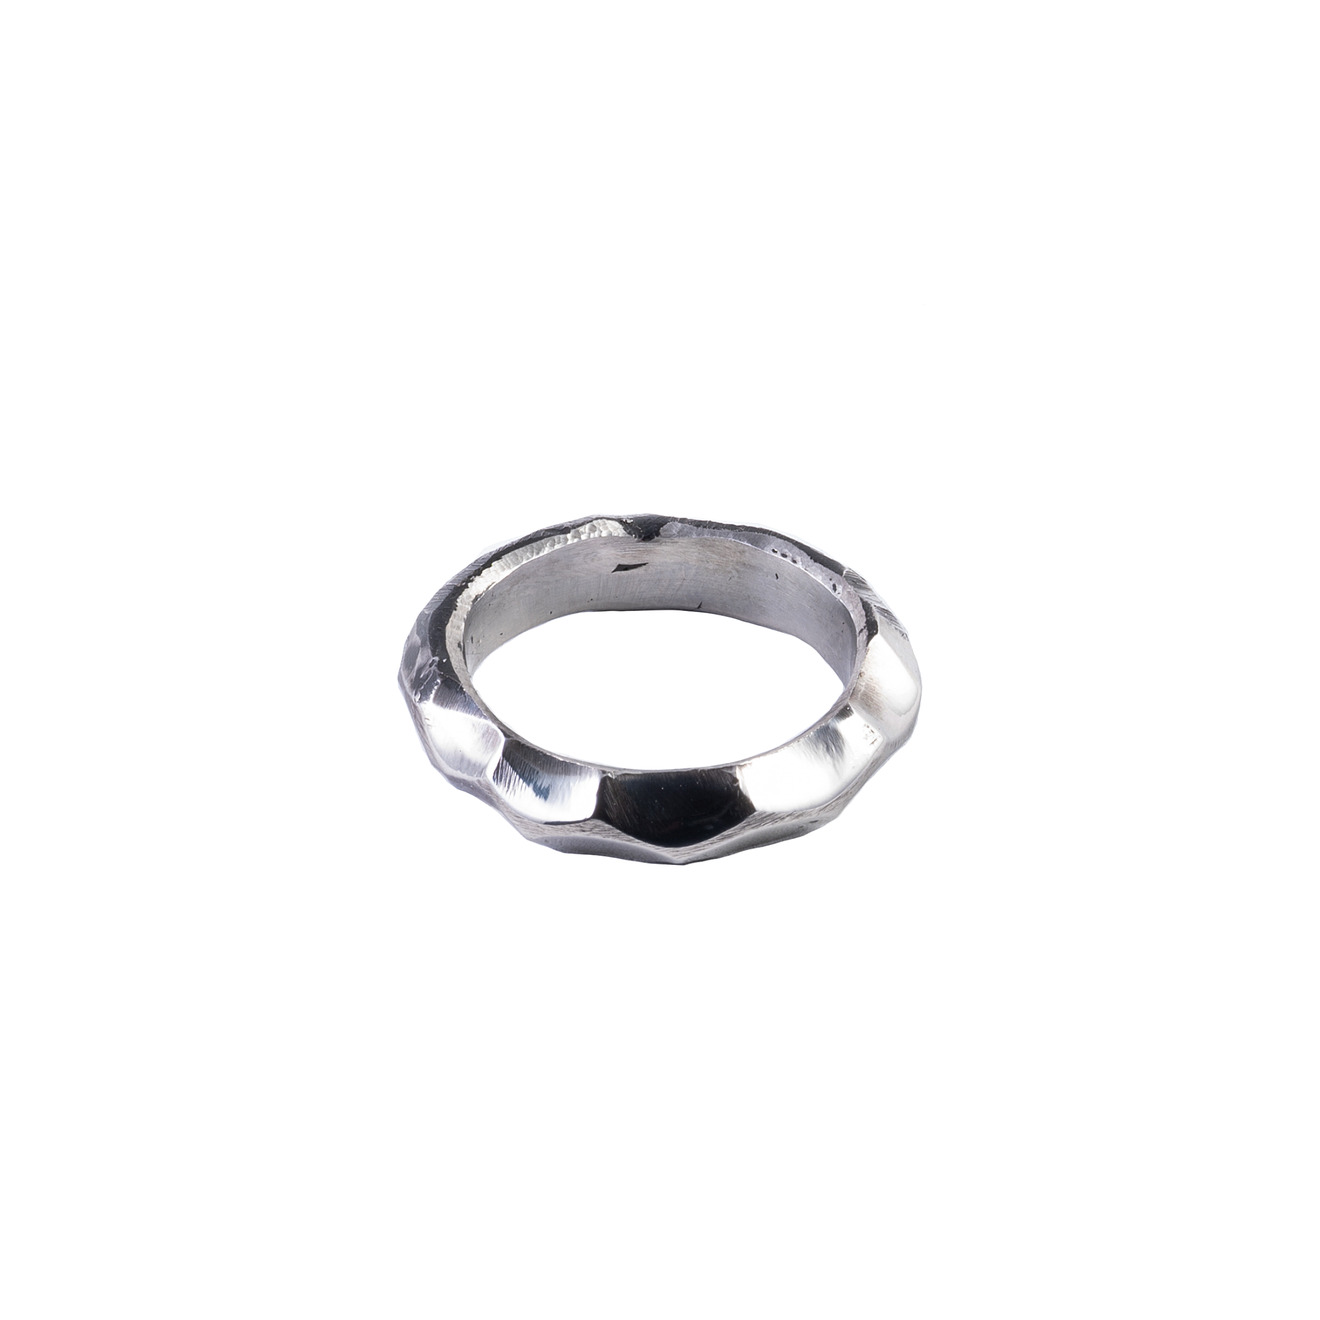 ko and co кольцо печатка proin из нержавеющей стали Ko and Co Кольцо ENTROPY из нержавеющей стали